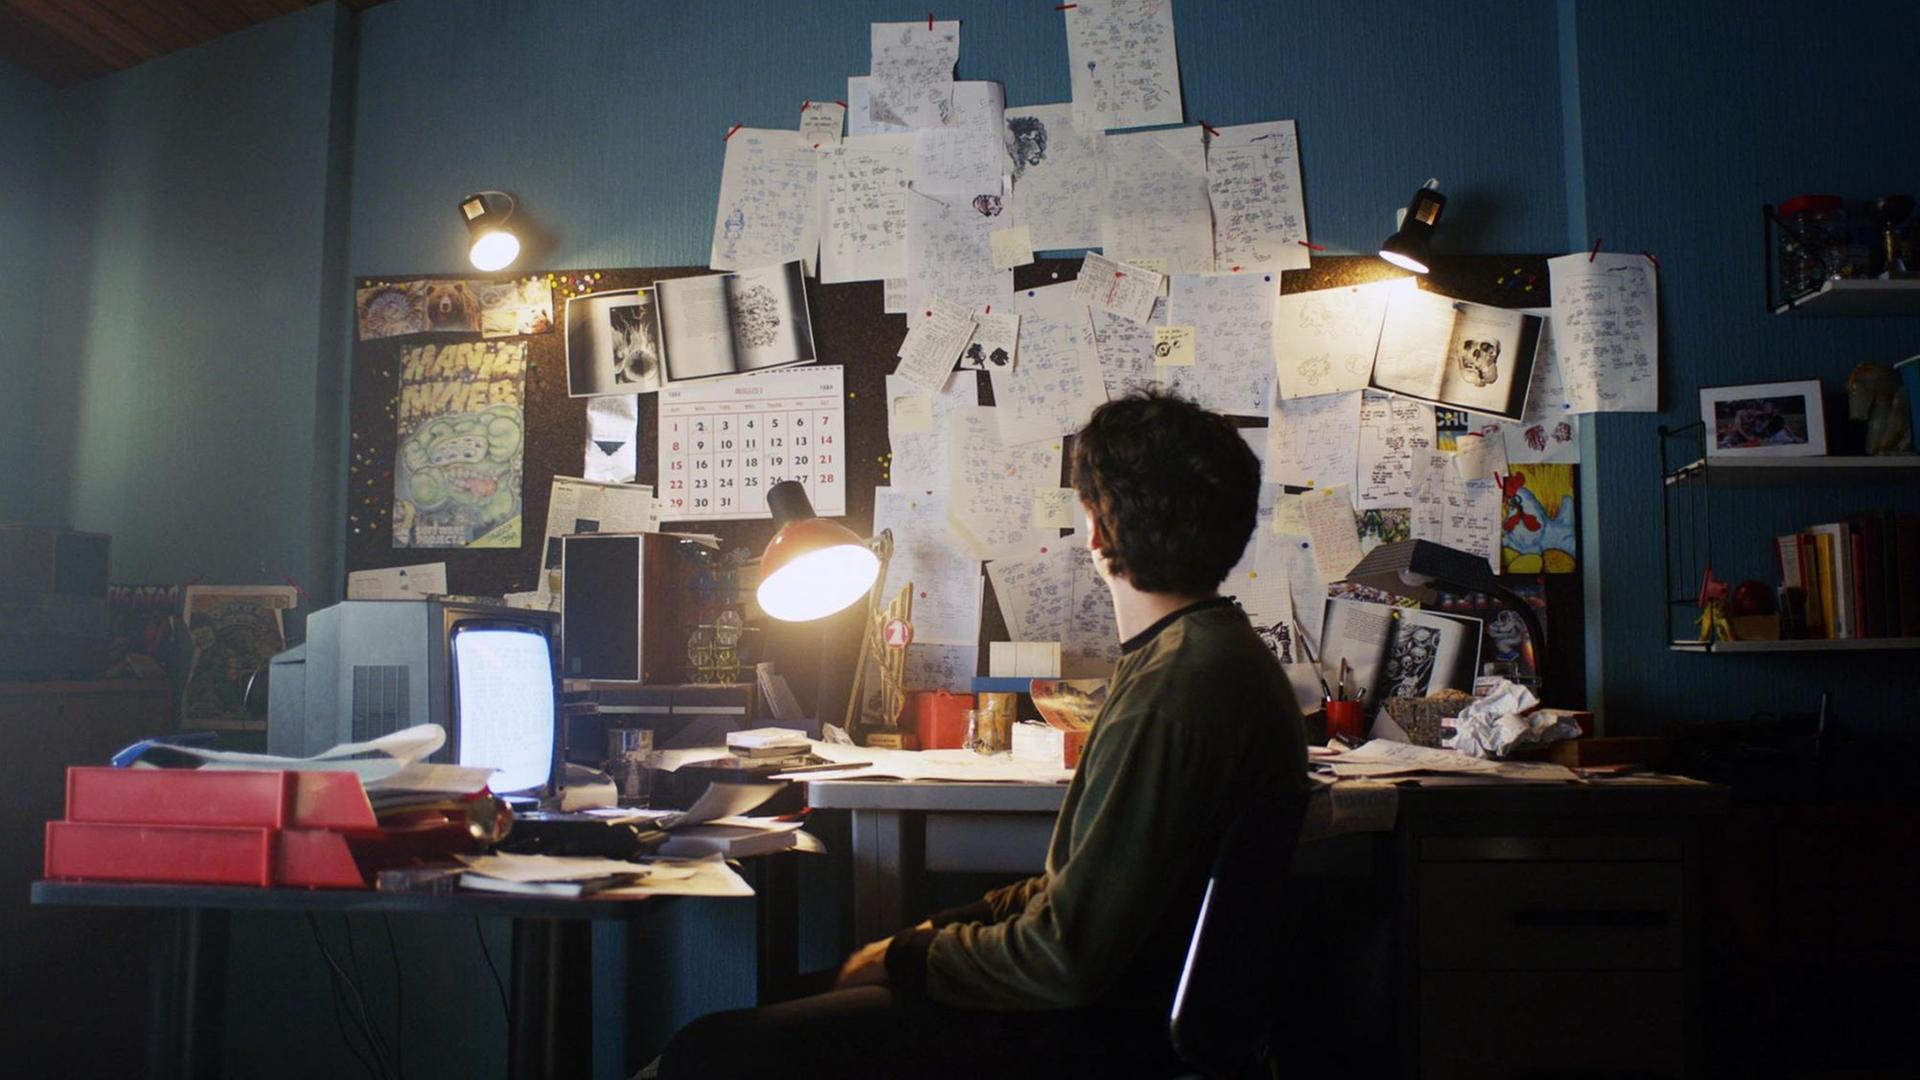 Filmstill aus der Netflix Serie "BLACK MIRROR: BANDERSNATCH. Der Schauspieler Fionn Whitehead in der Hauptrolle sitzt vor einem Bildschirm an einem chaotischem Schreibtisch.